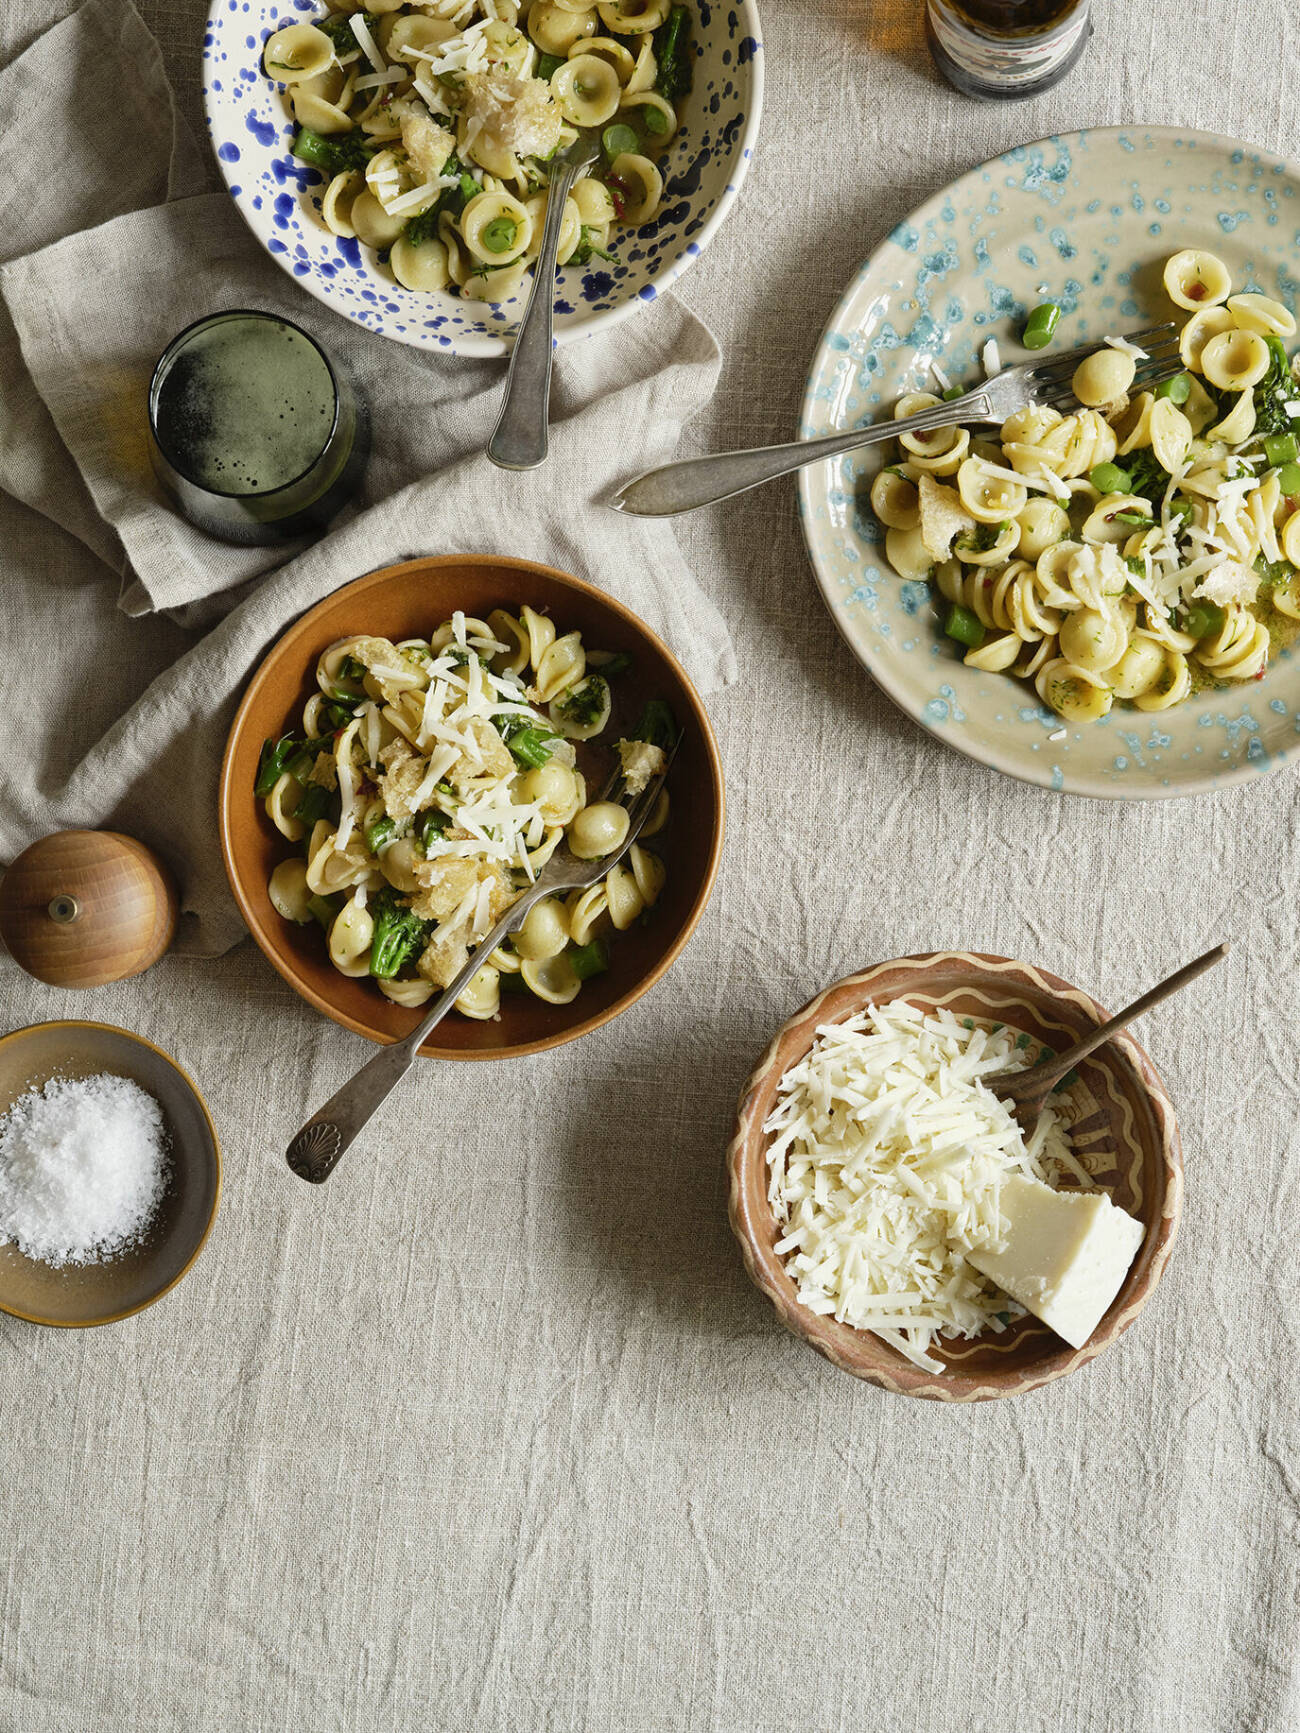 Orecchiette är en vegetarisk pasta med sparrisbroccoli och pecorino